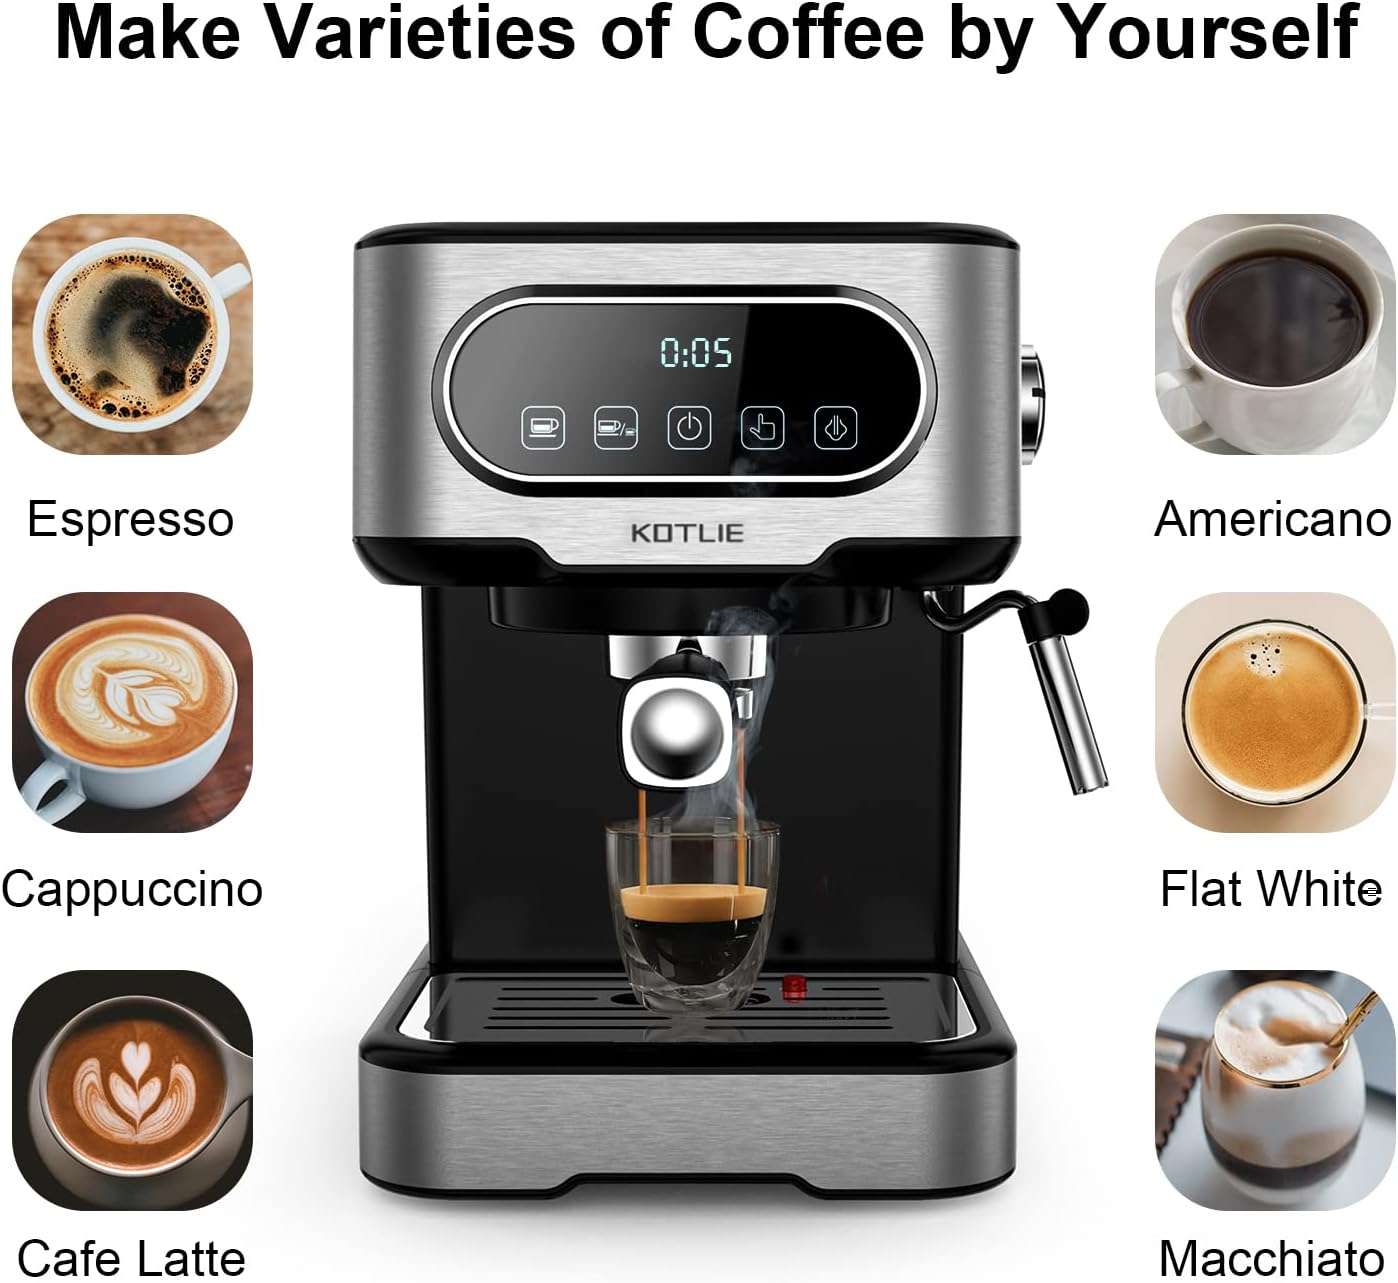 caffe-buonissimo-questa-macchinetta-incredibile-45-pannello